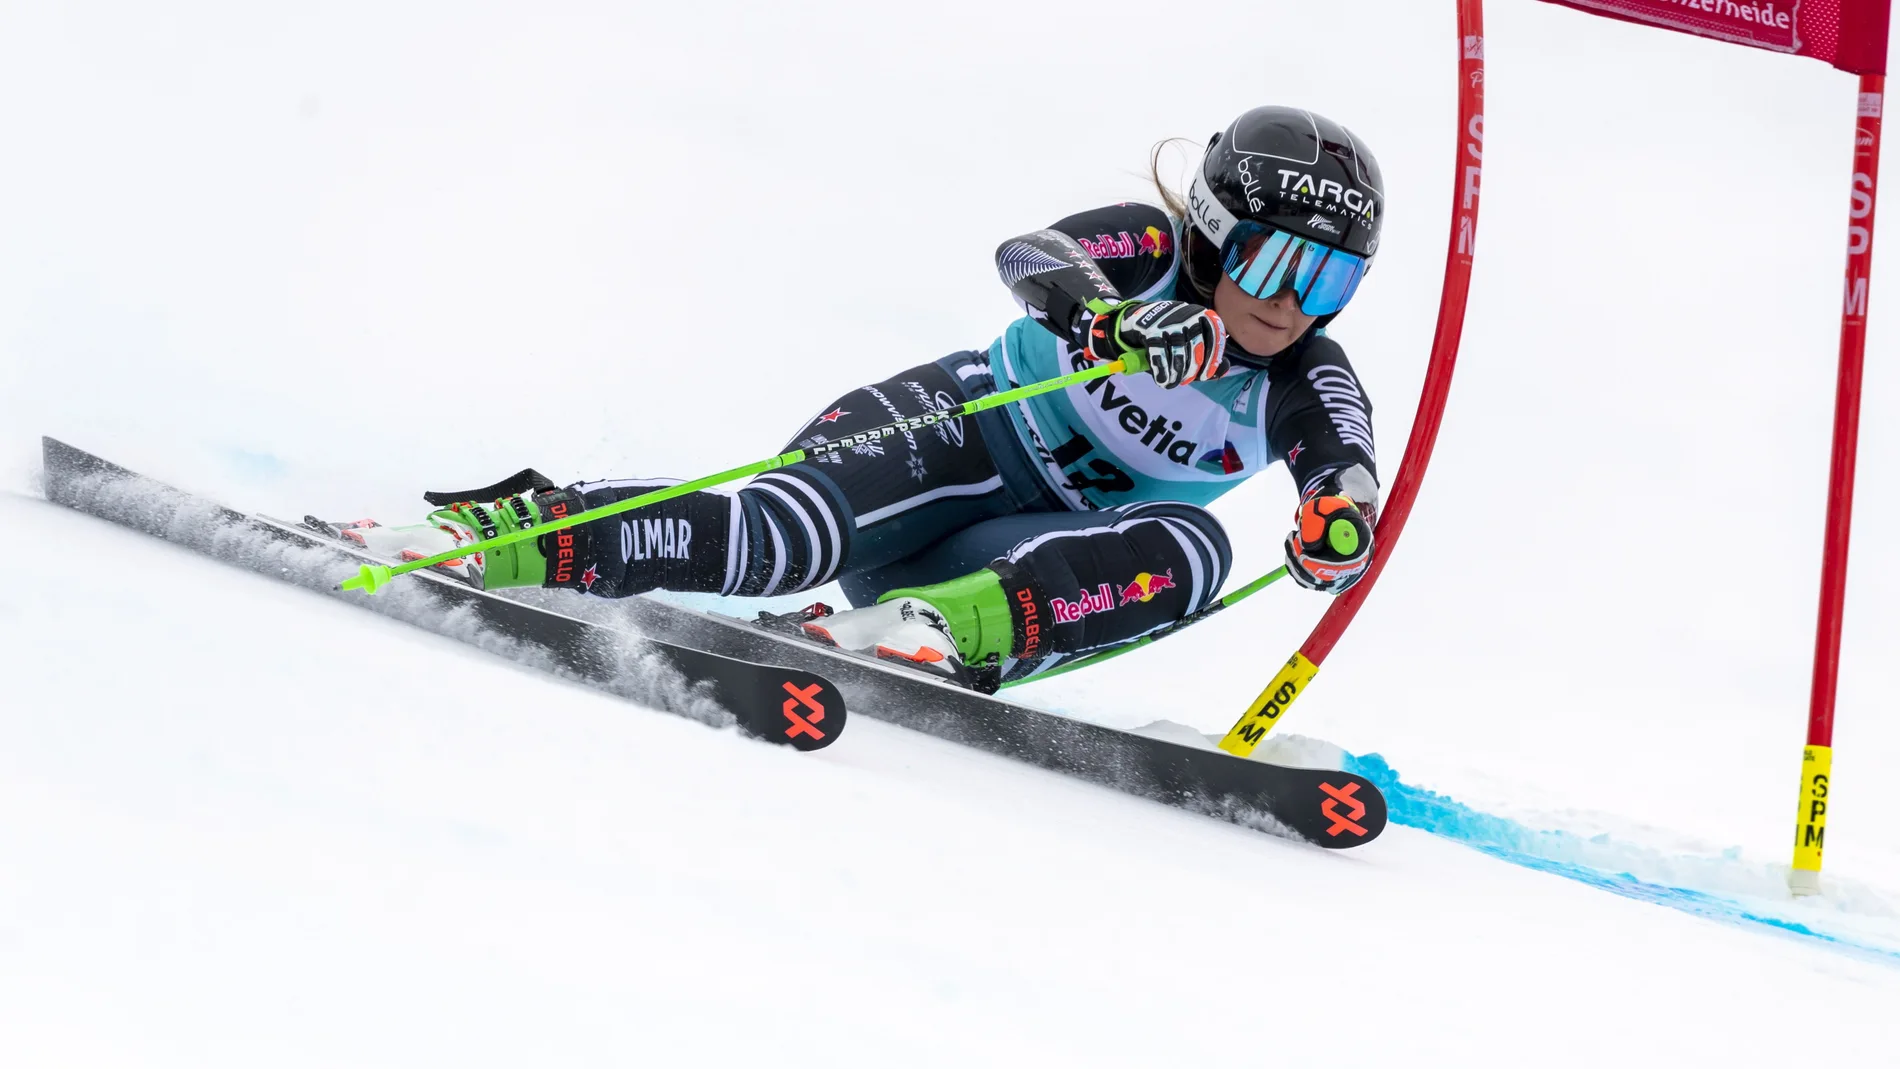 La neozelandesa Alice Robinson en acción durante la primera manga de la carrera de eslalon gigante femenino en las finales de la Copa del Mundo de Esquí Alpino de la FIS, en Lenzerheide, Suiza, el 21 de marzo de 2021. EFE/EPA/JEAN-CHRISTOPHE BOTT